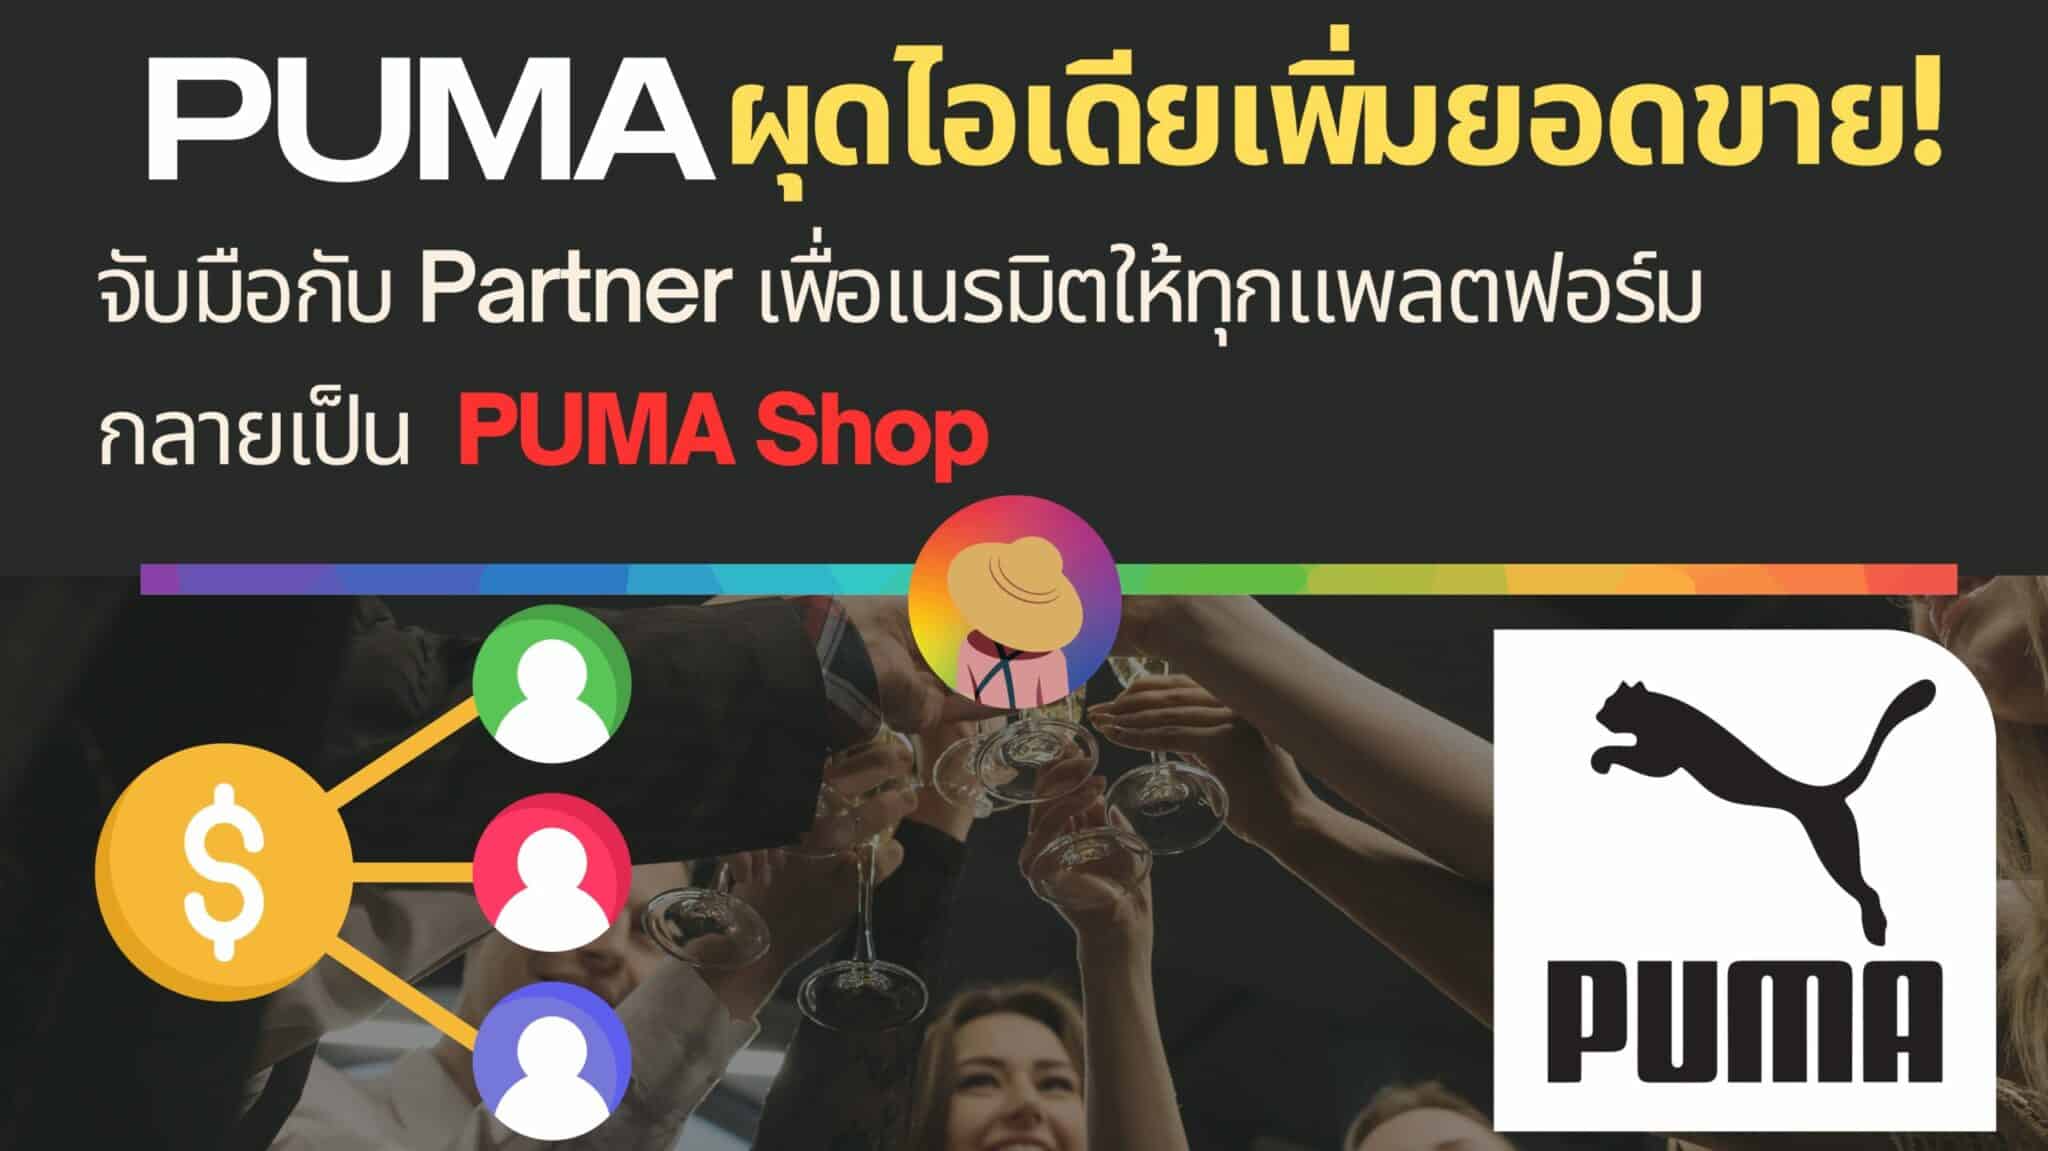 PUMA ผุดไอเดียเพิ่มยอดขาย จับมือกับ Lodestar Marketing และ Impact.com เนรมิตให้ทุกแพลตฟอร์มกลายเป็น PUMA Shop